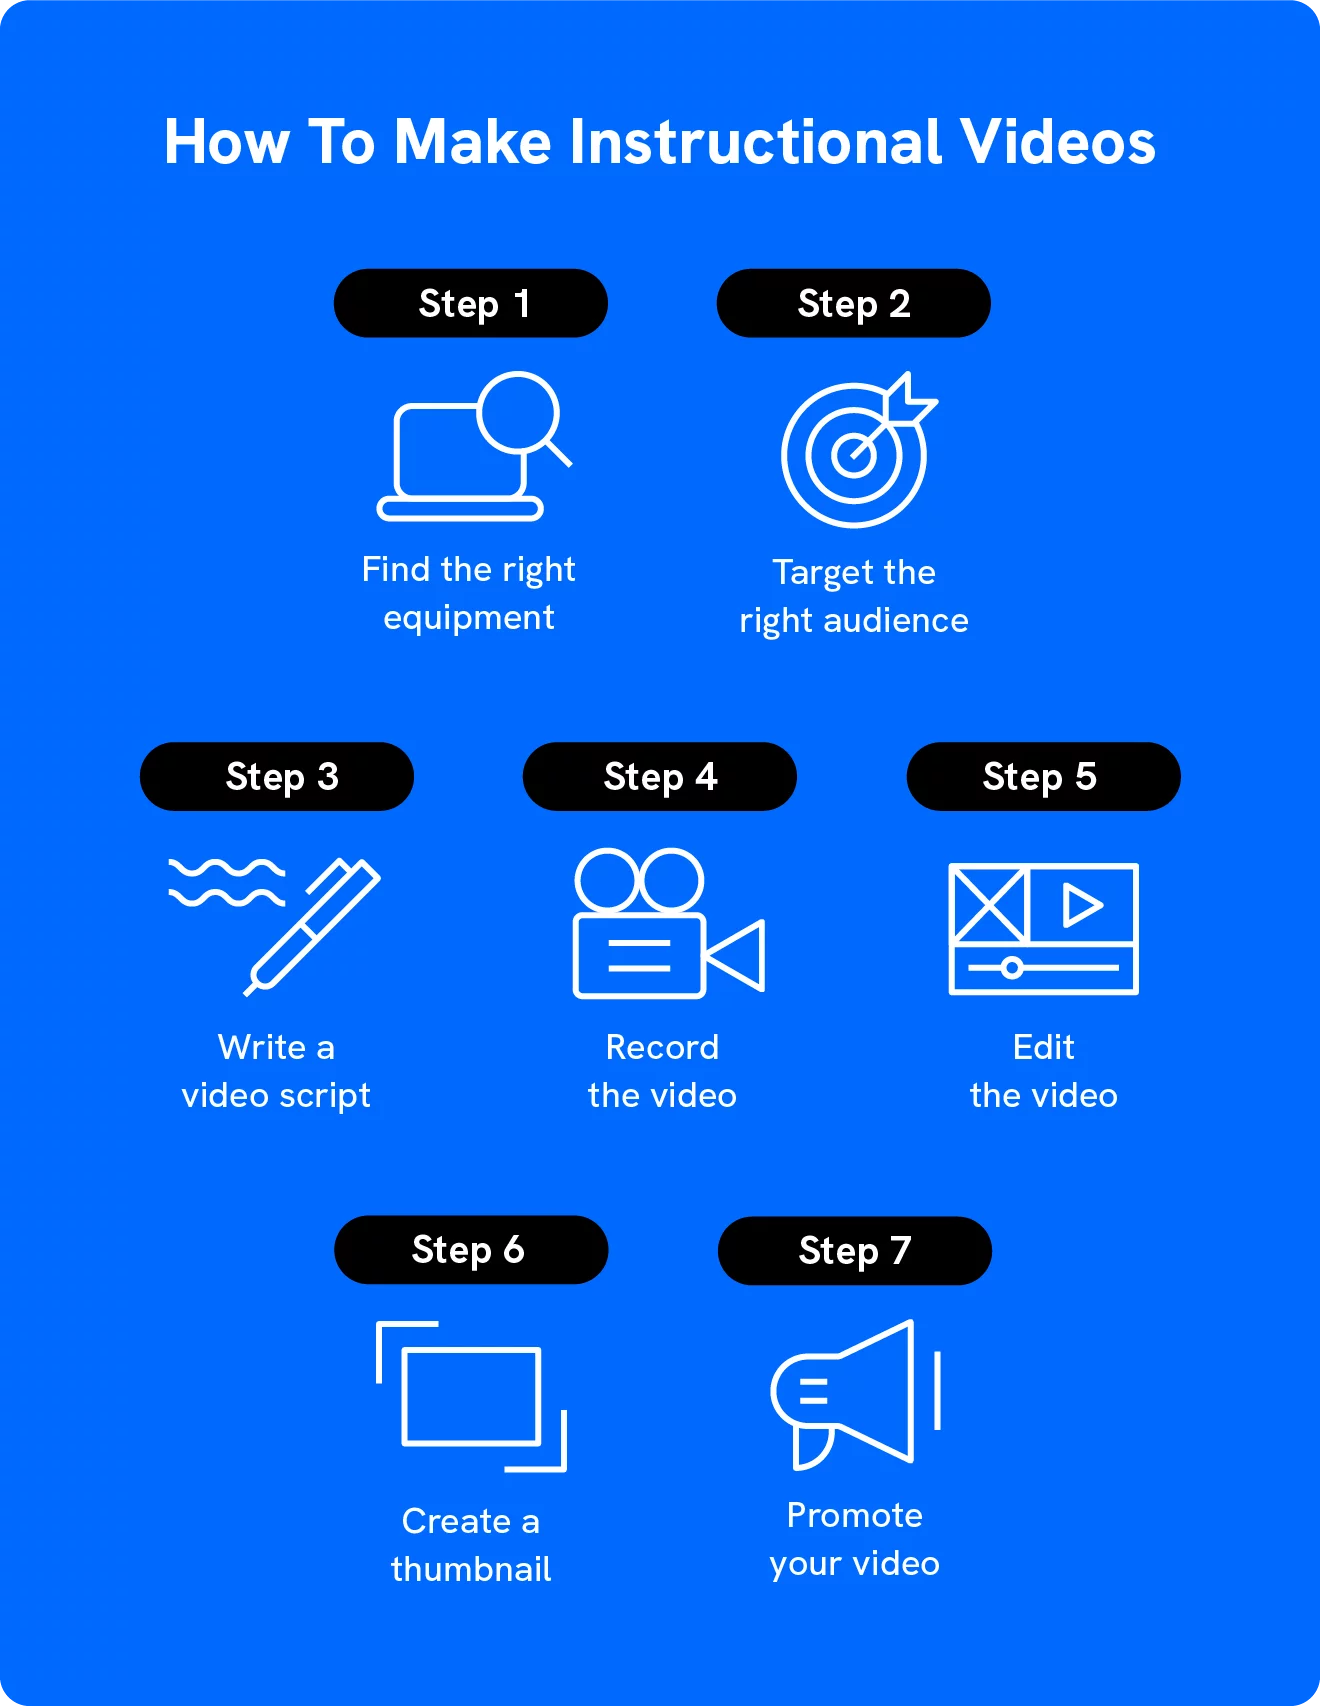 一張圖顯示瞭如何通過 7 個步驟創建教學視頻。